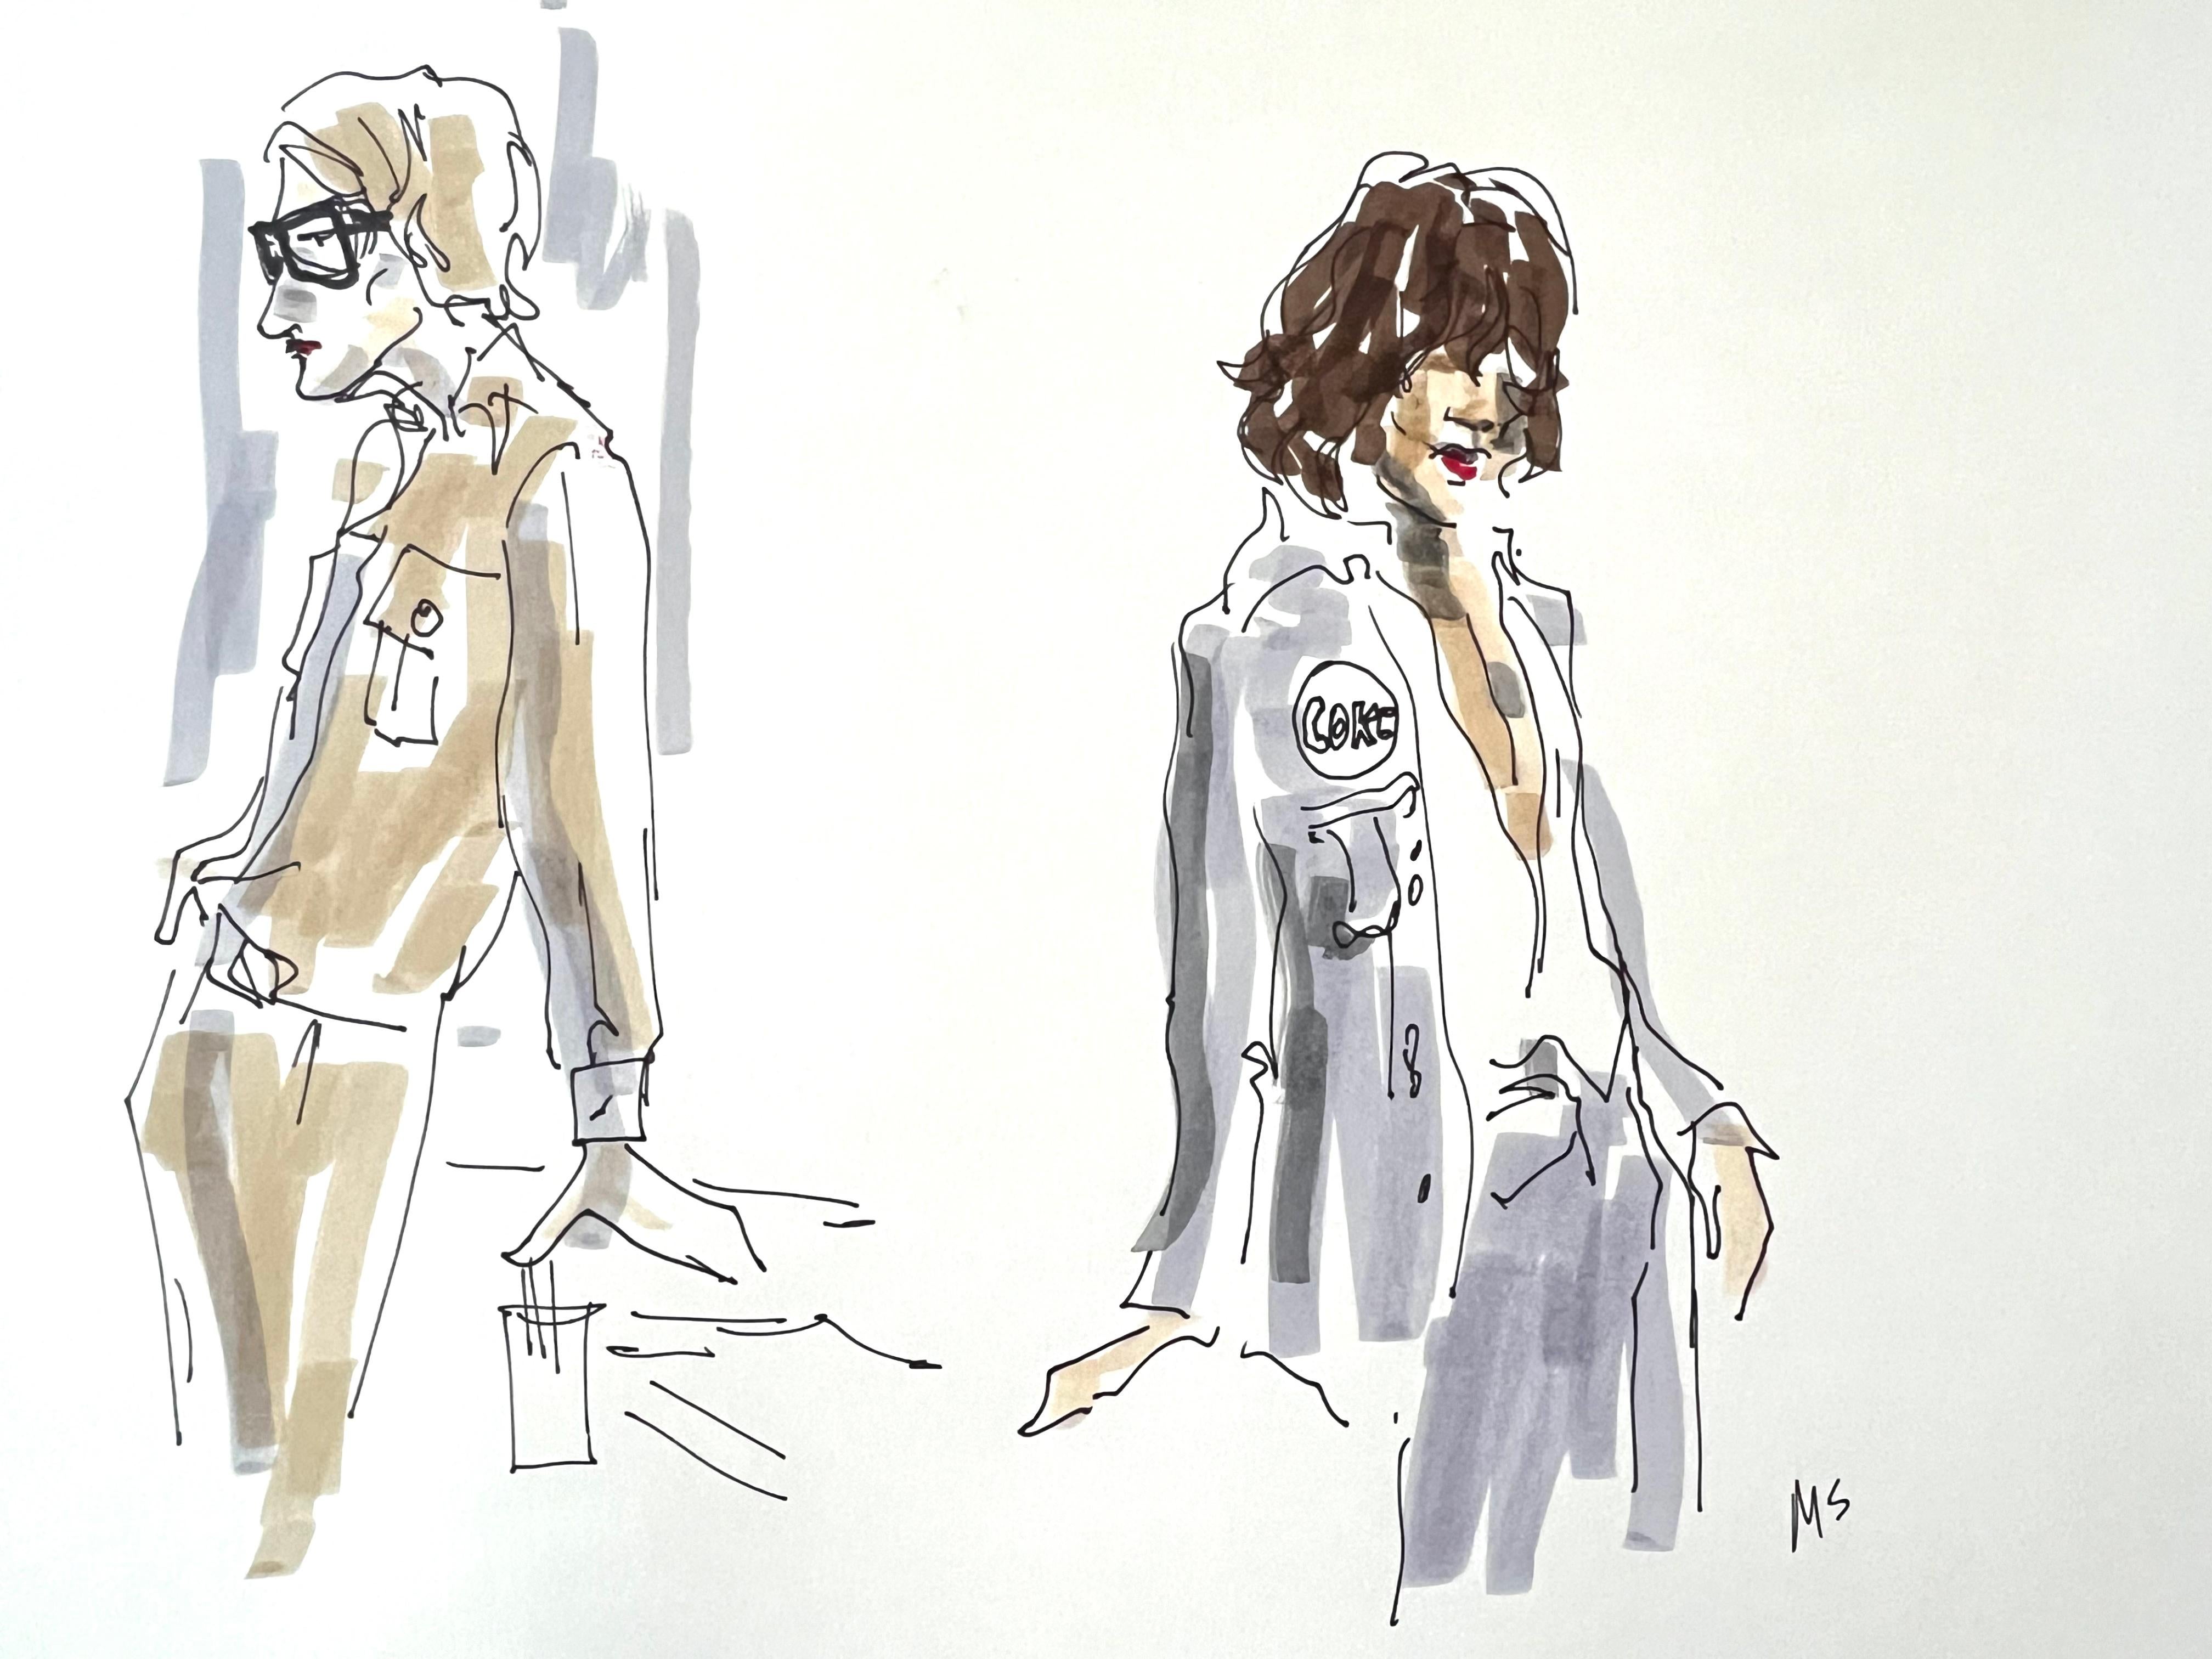 Manuel Santelices Figurative Art – Studie für Yves Saint Laurent und Mick Jagger. Aus der Serie Fashion